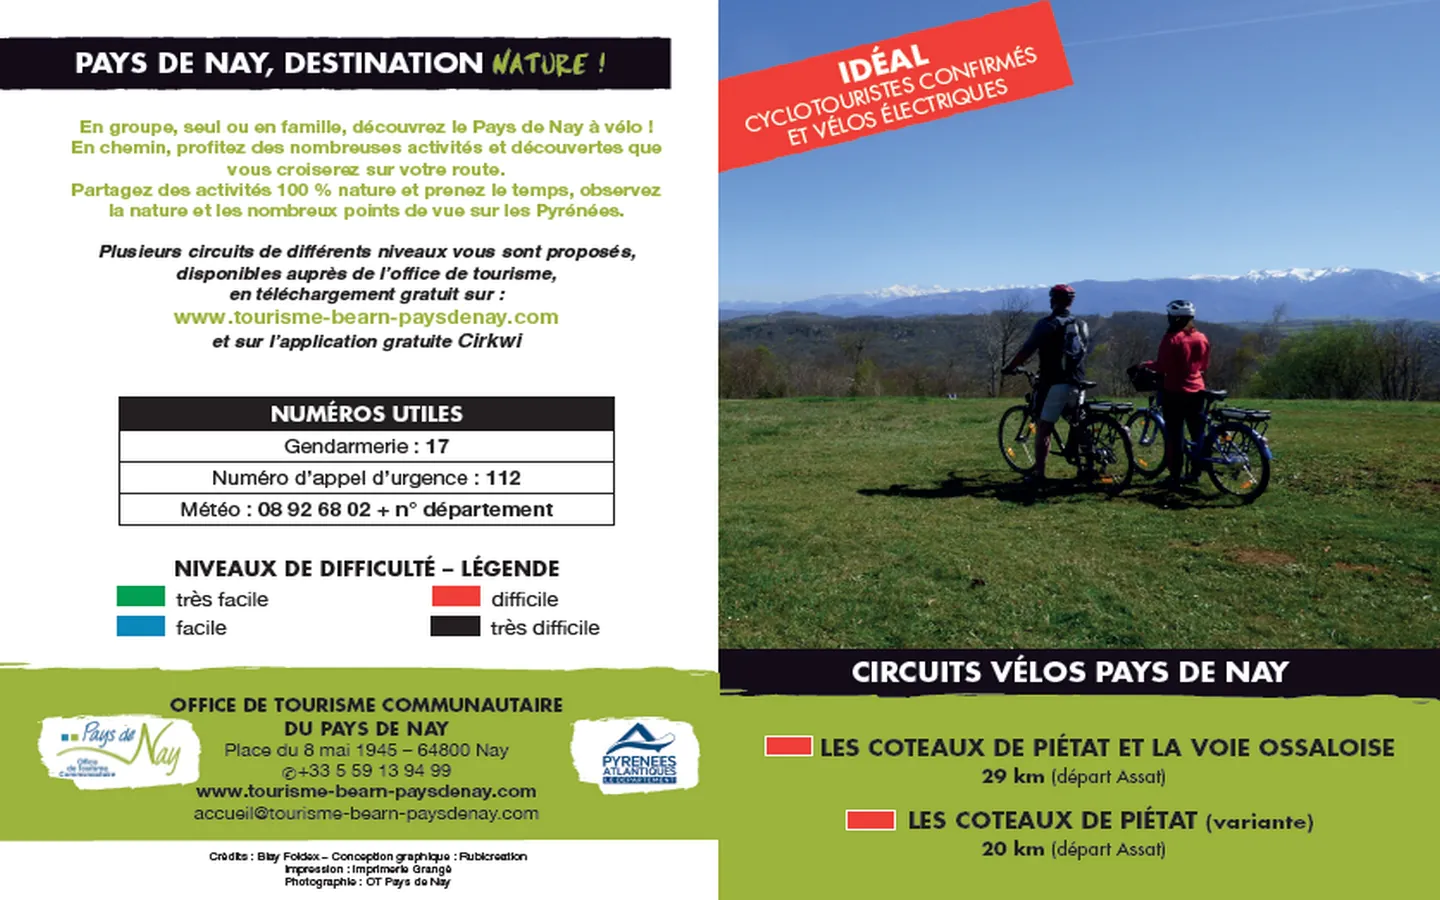 Circuit vélo 5 : les coteaux de Piétat et la voie ossaloise Assat Nouvelle-Aquitaine